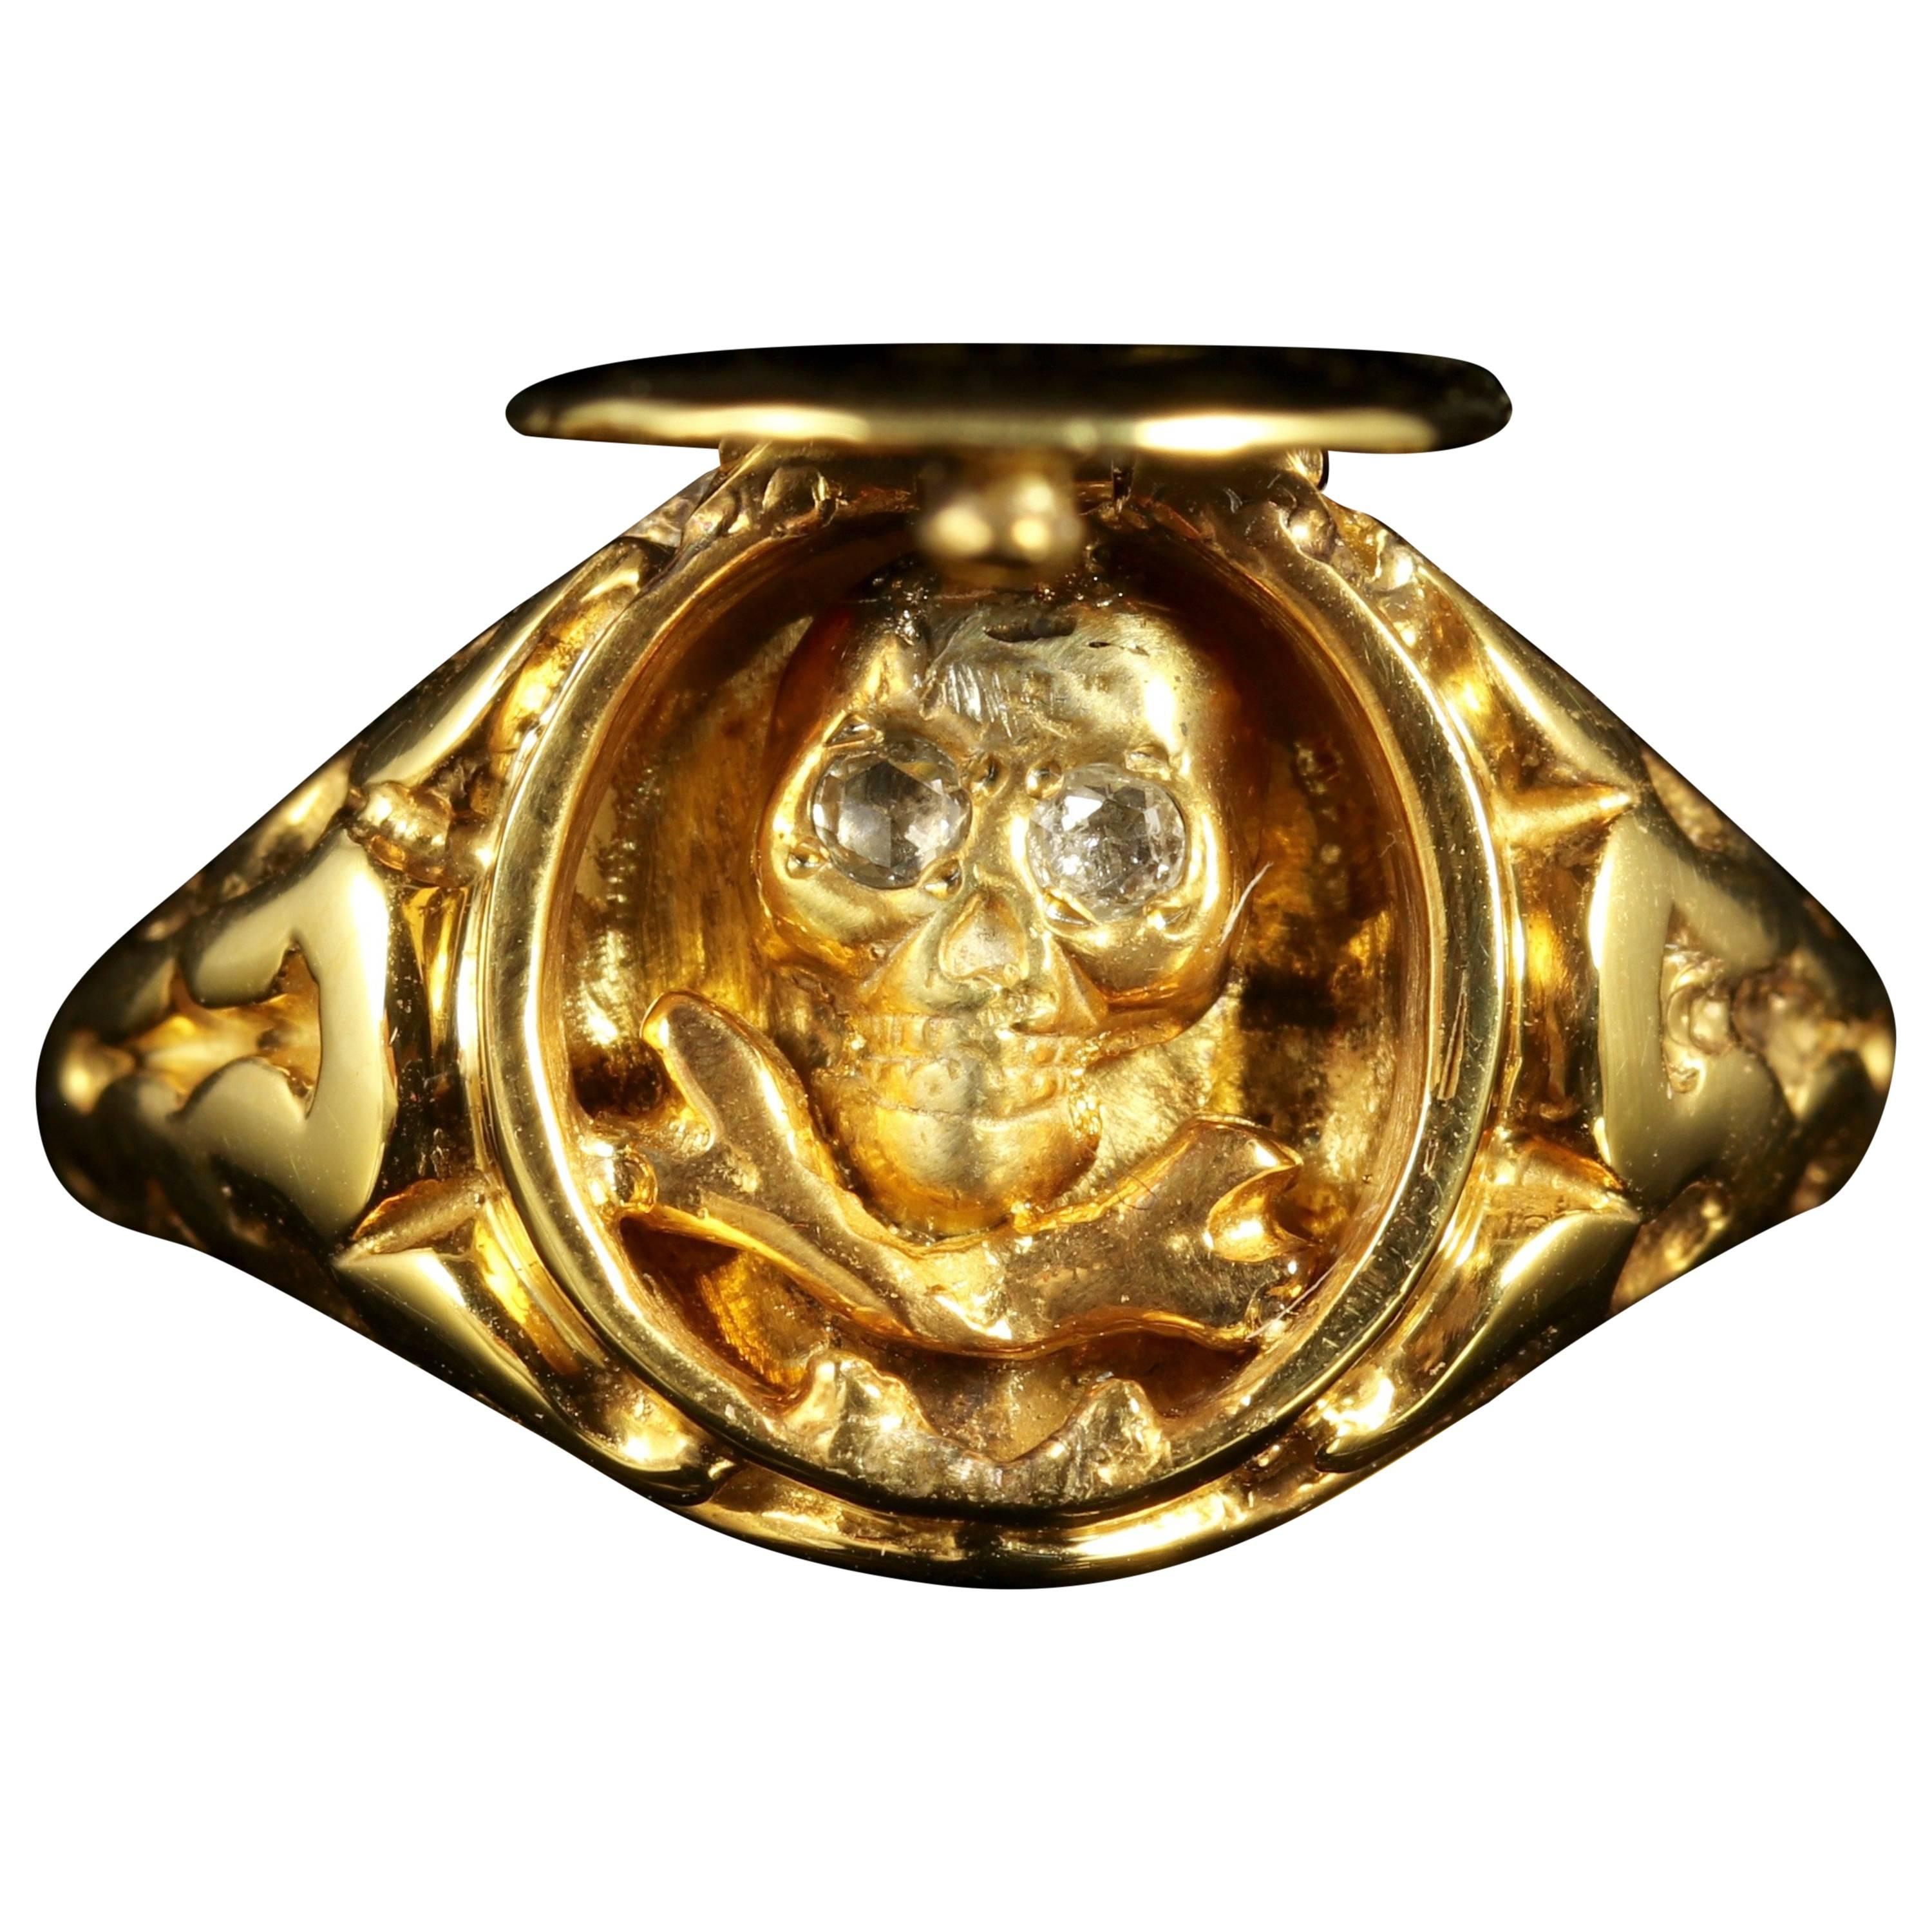 Memento Mori Skull Diamond Locket Ring 18 Carat Gold Skull Crossbones